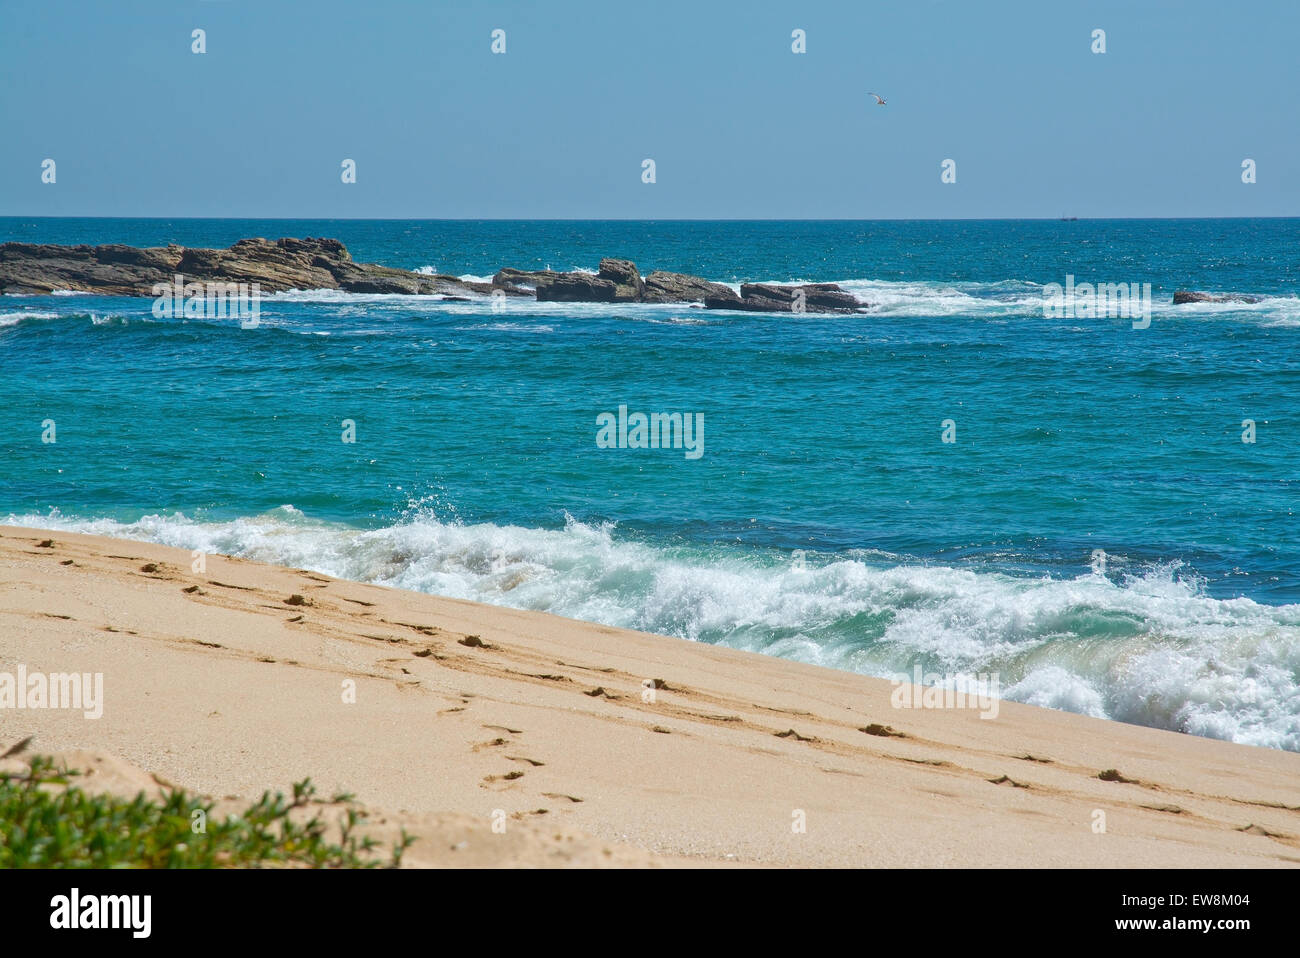 Paradies-Strand mit grünen türkisfarbenen Wellen, Kokosnuss-Palmen und feinen unberührten Sand, südlichen Provinz, Sri Lanka, Asien. Stockfoto